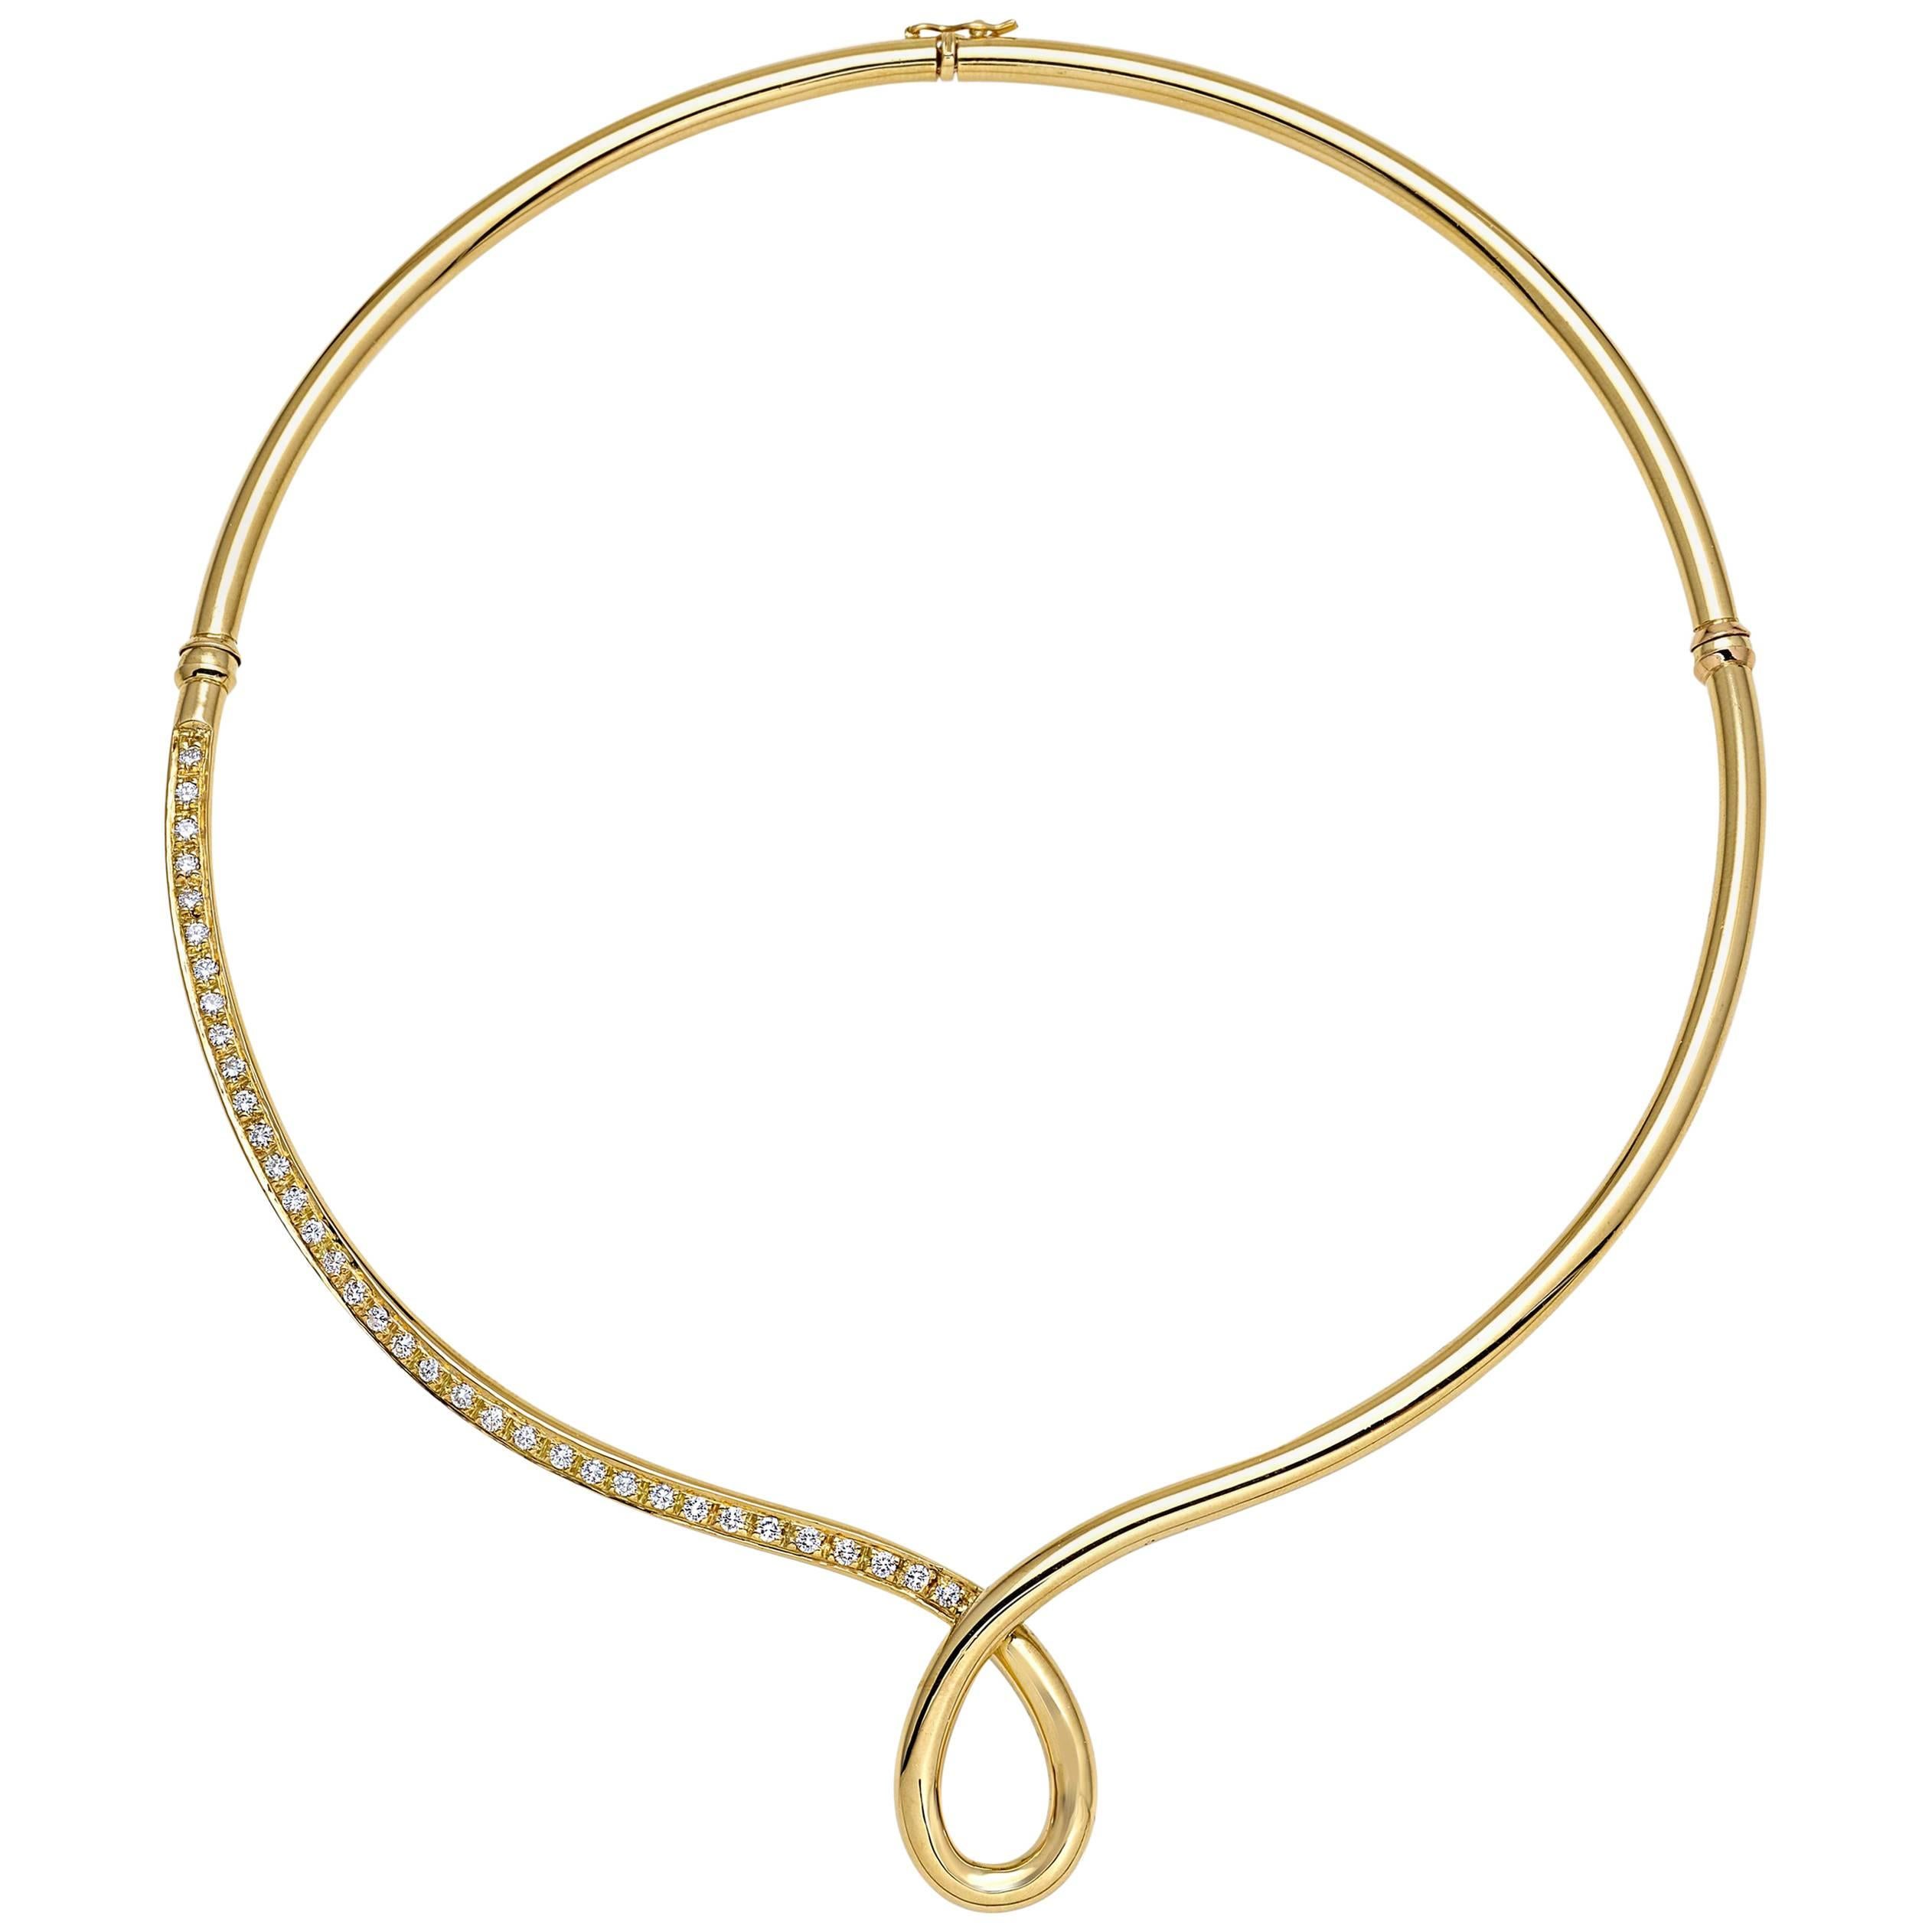 Halskette aus der Kollektion "Essence" aus 18 Karat Gelbgold und Diamanten